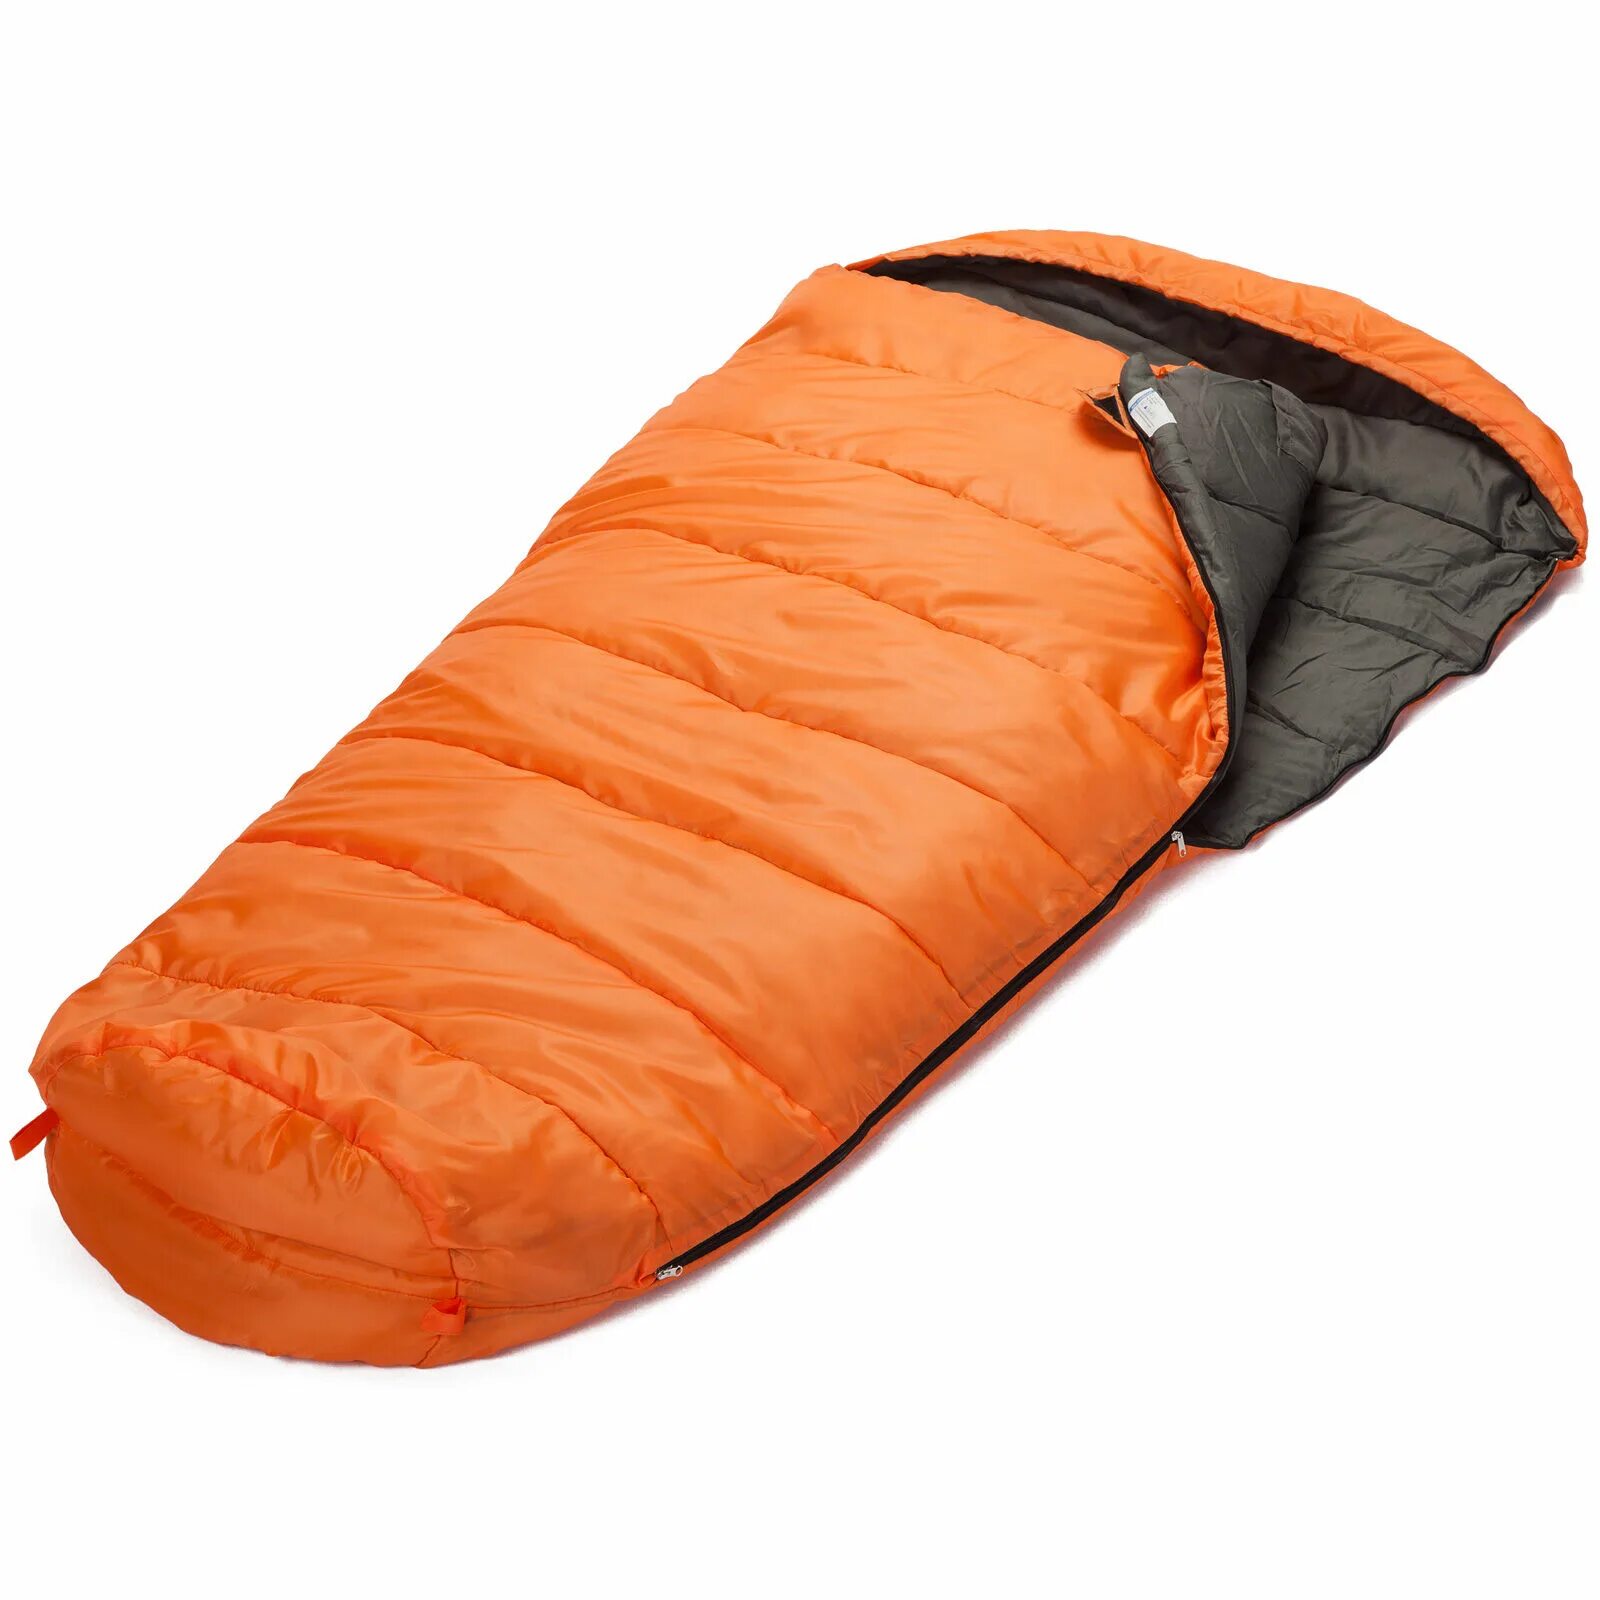 Спальный мешок производители. Спальный мешок кокон -Gelert 300. Спальник Schlafsack. Saco de dormir спальный мешок. Спальный мешок оранжевый.